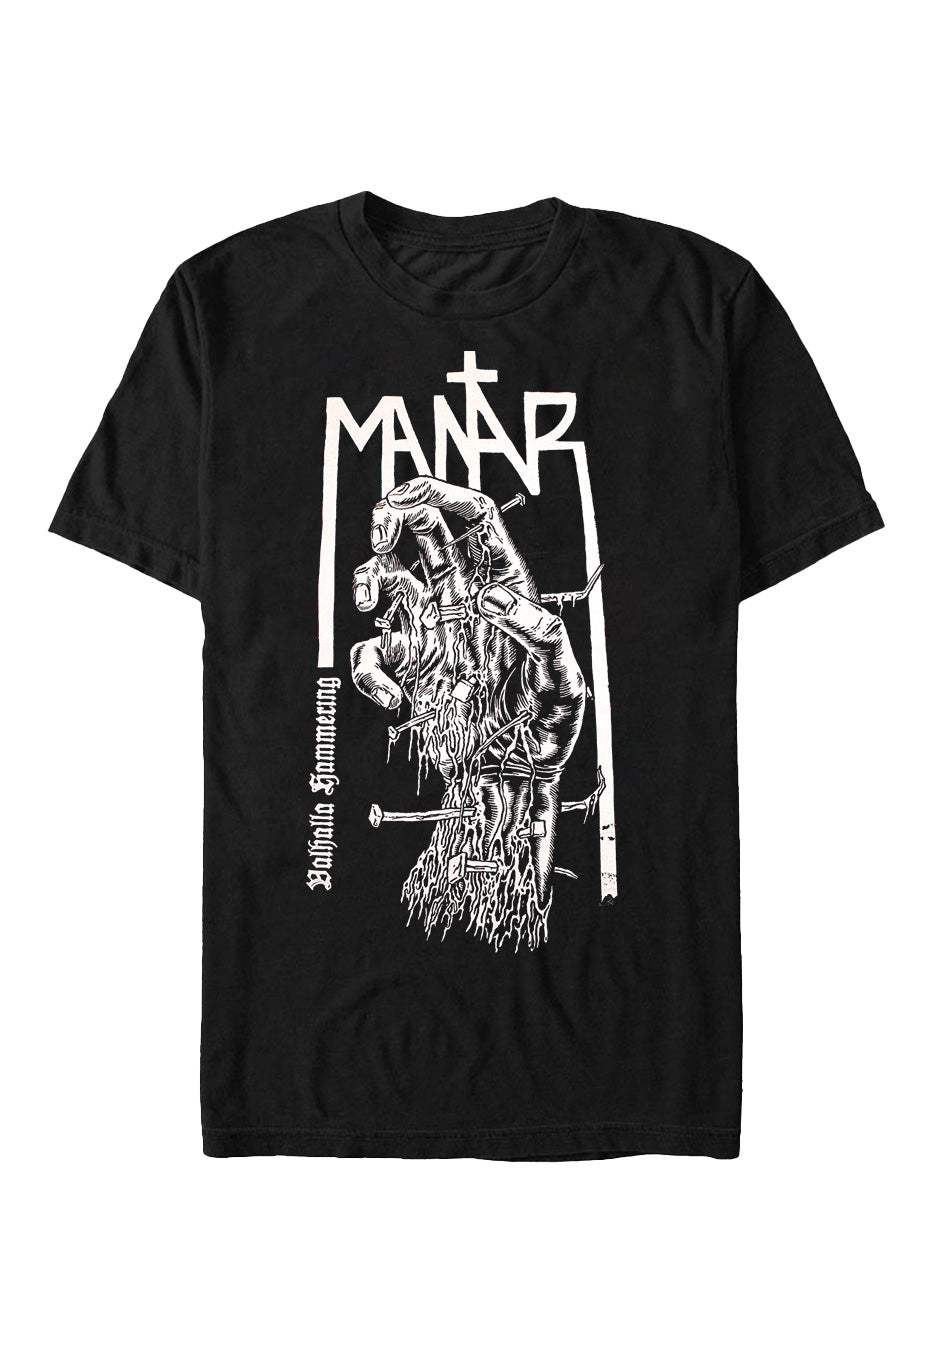 Mantar - Valhalla Hammering - T-Shirt